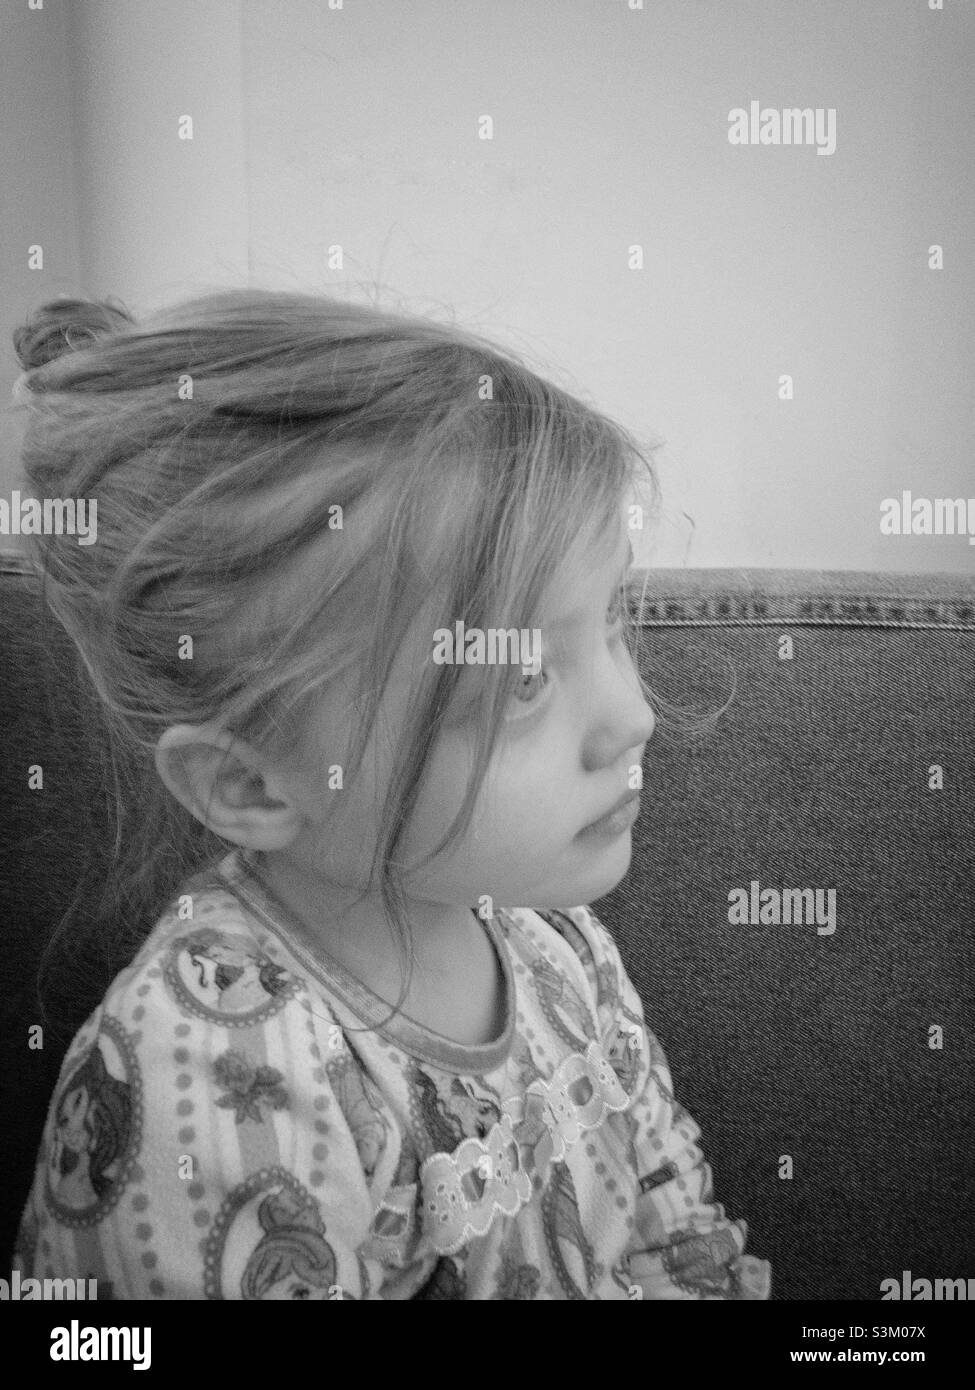 Ritratto laterale bianco e nero di una bambina con i capelli in su in una pistola Foto Stock